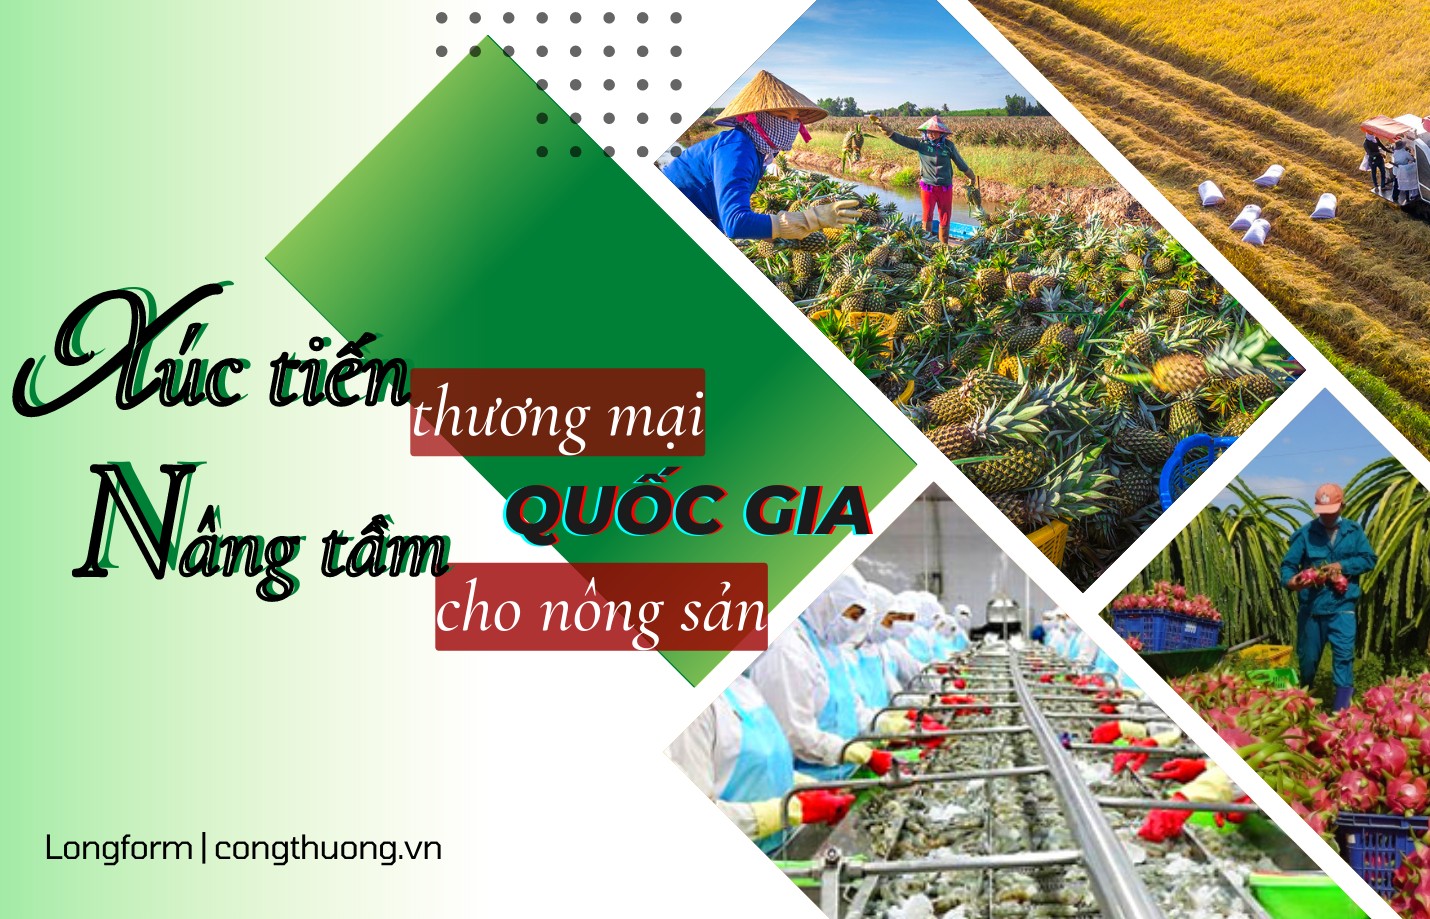 Longform | Xúc tiến thương mại quốc gia nâng tầm cho nông sản